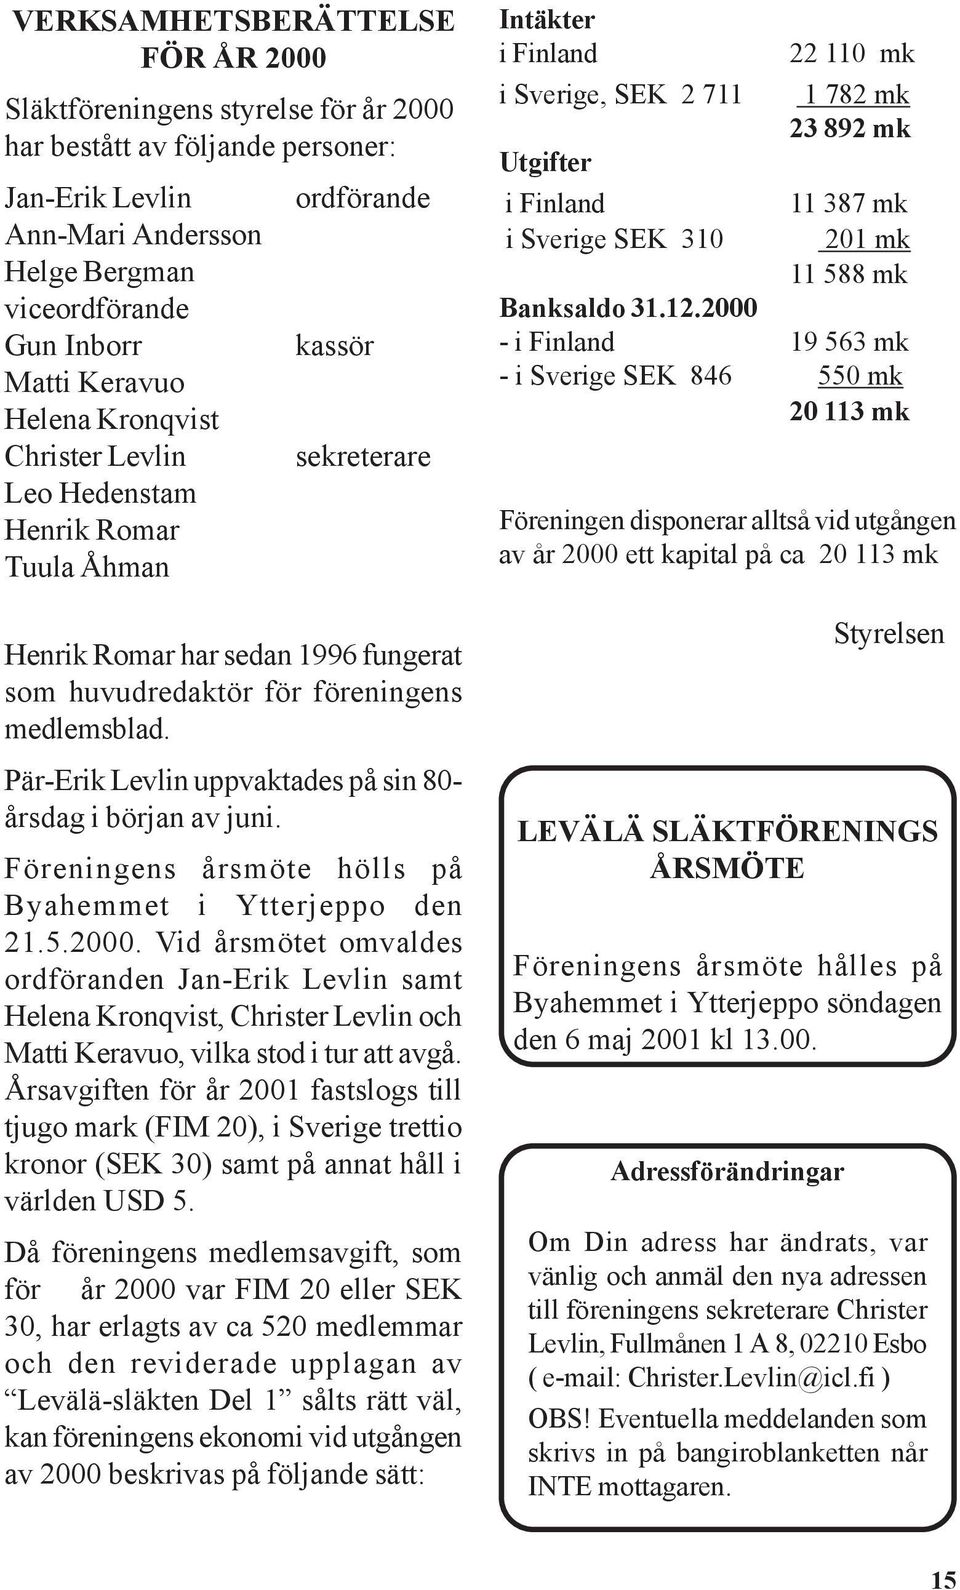 Pär-Erik Levlin uppvaktades på sin 80- årsdag i början av juni. Föreningens årsmöte hölls på Byahemmet i Ytterjeppo den 21.5.2000.